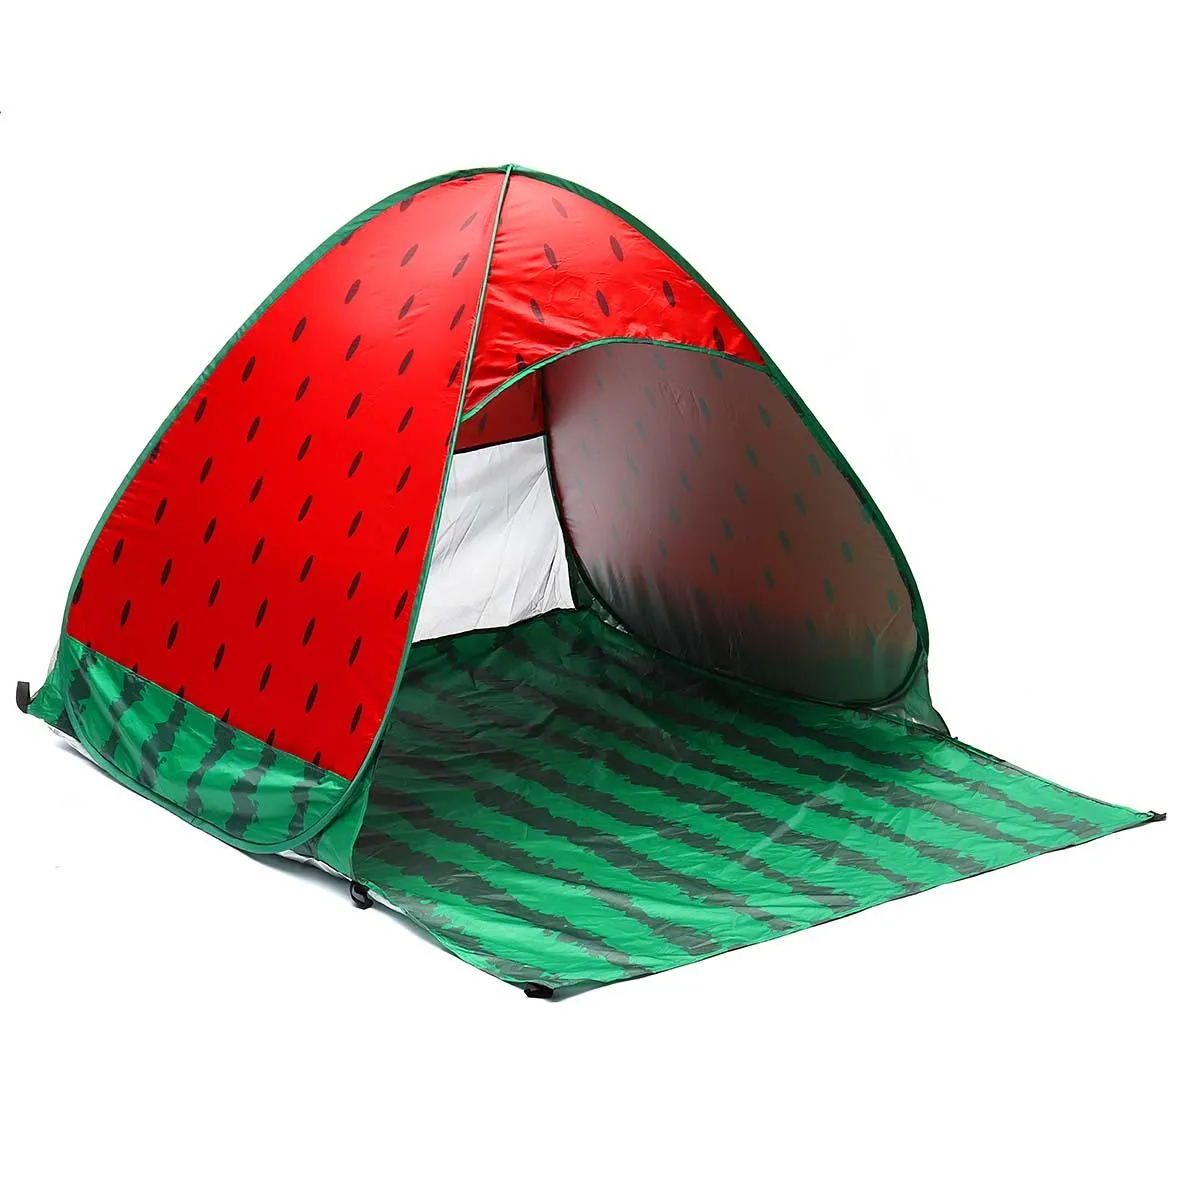 Tenda Pop Up Automatica 2 3 Persone Allaperto Tenda Da Sole Ombrellone Da  Spiaggia UV Impermeabile Campeggio Popolare Tenda Da Campeggio Feste In  Spiaggia Allaperto Pop Up Da 40,05 €